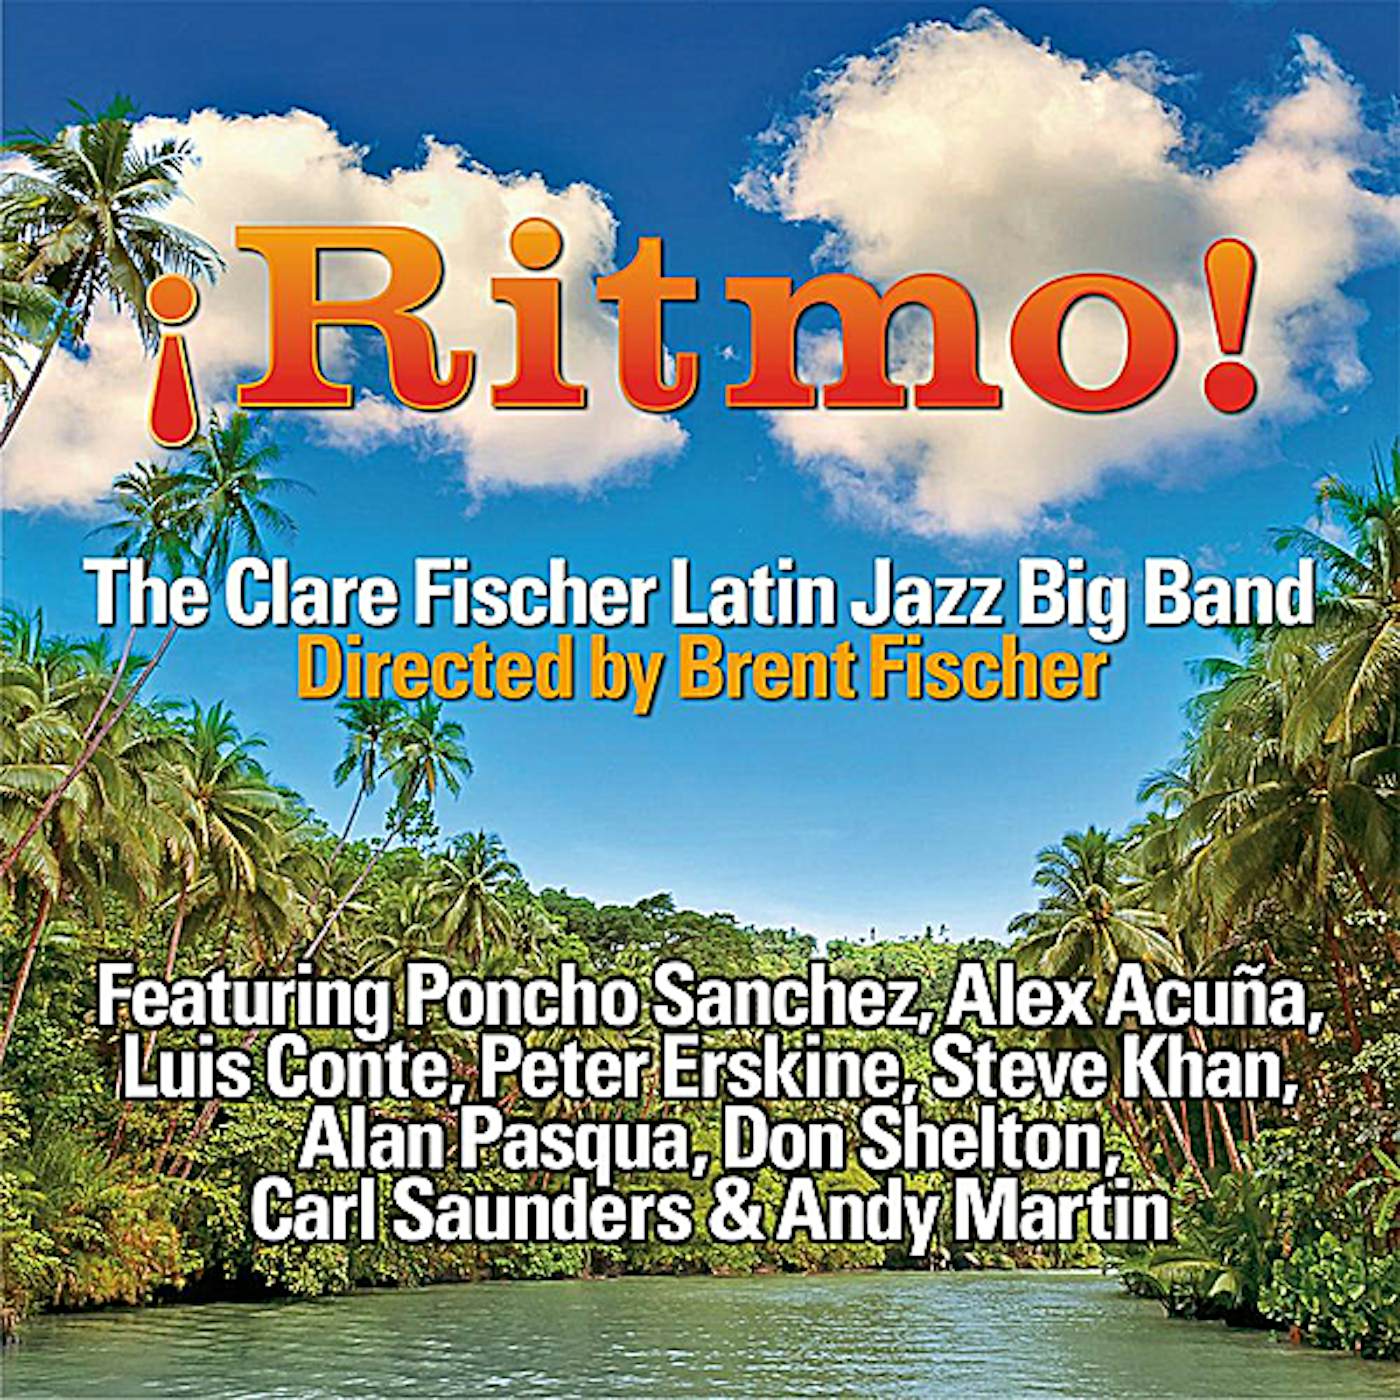 Clare Fischer RITMO CD